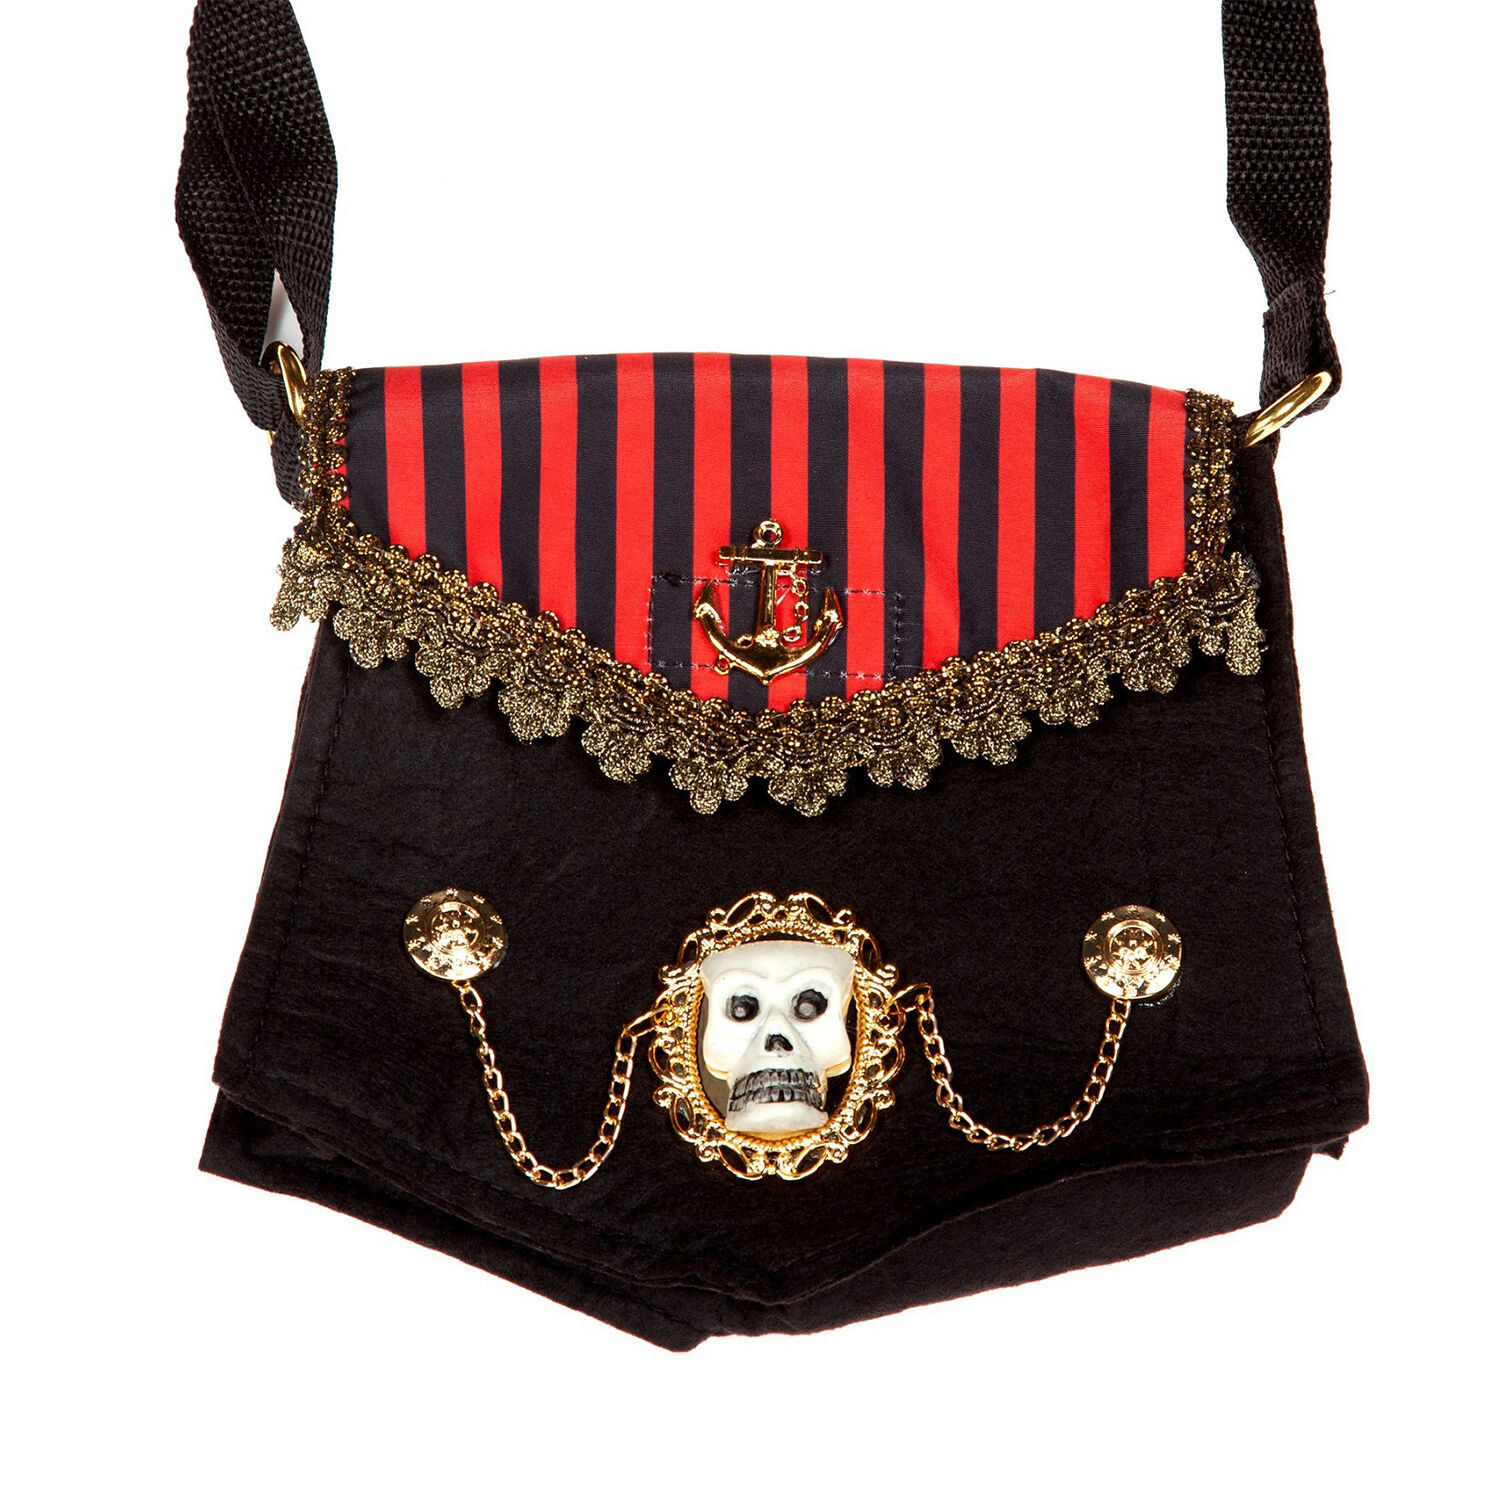 NEU Piraten-Tasche mit Streifen, schwarz-rot